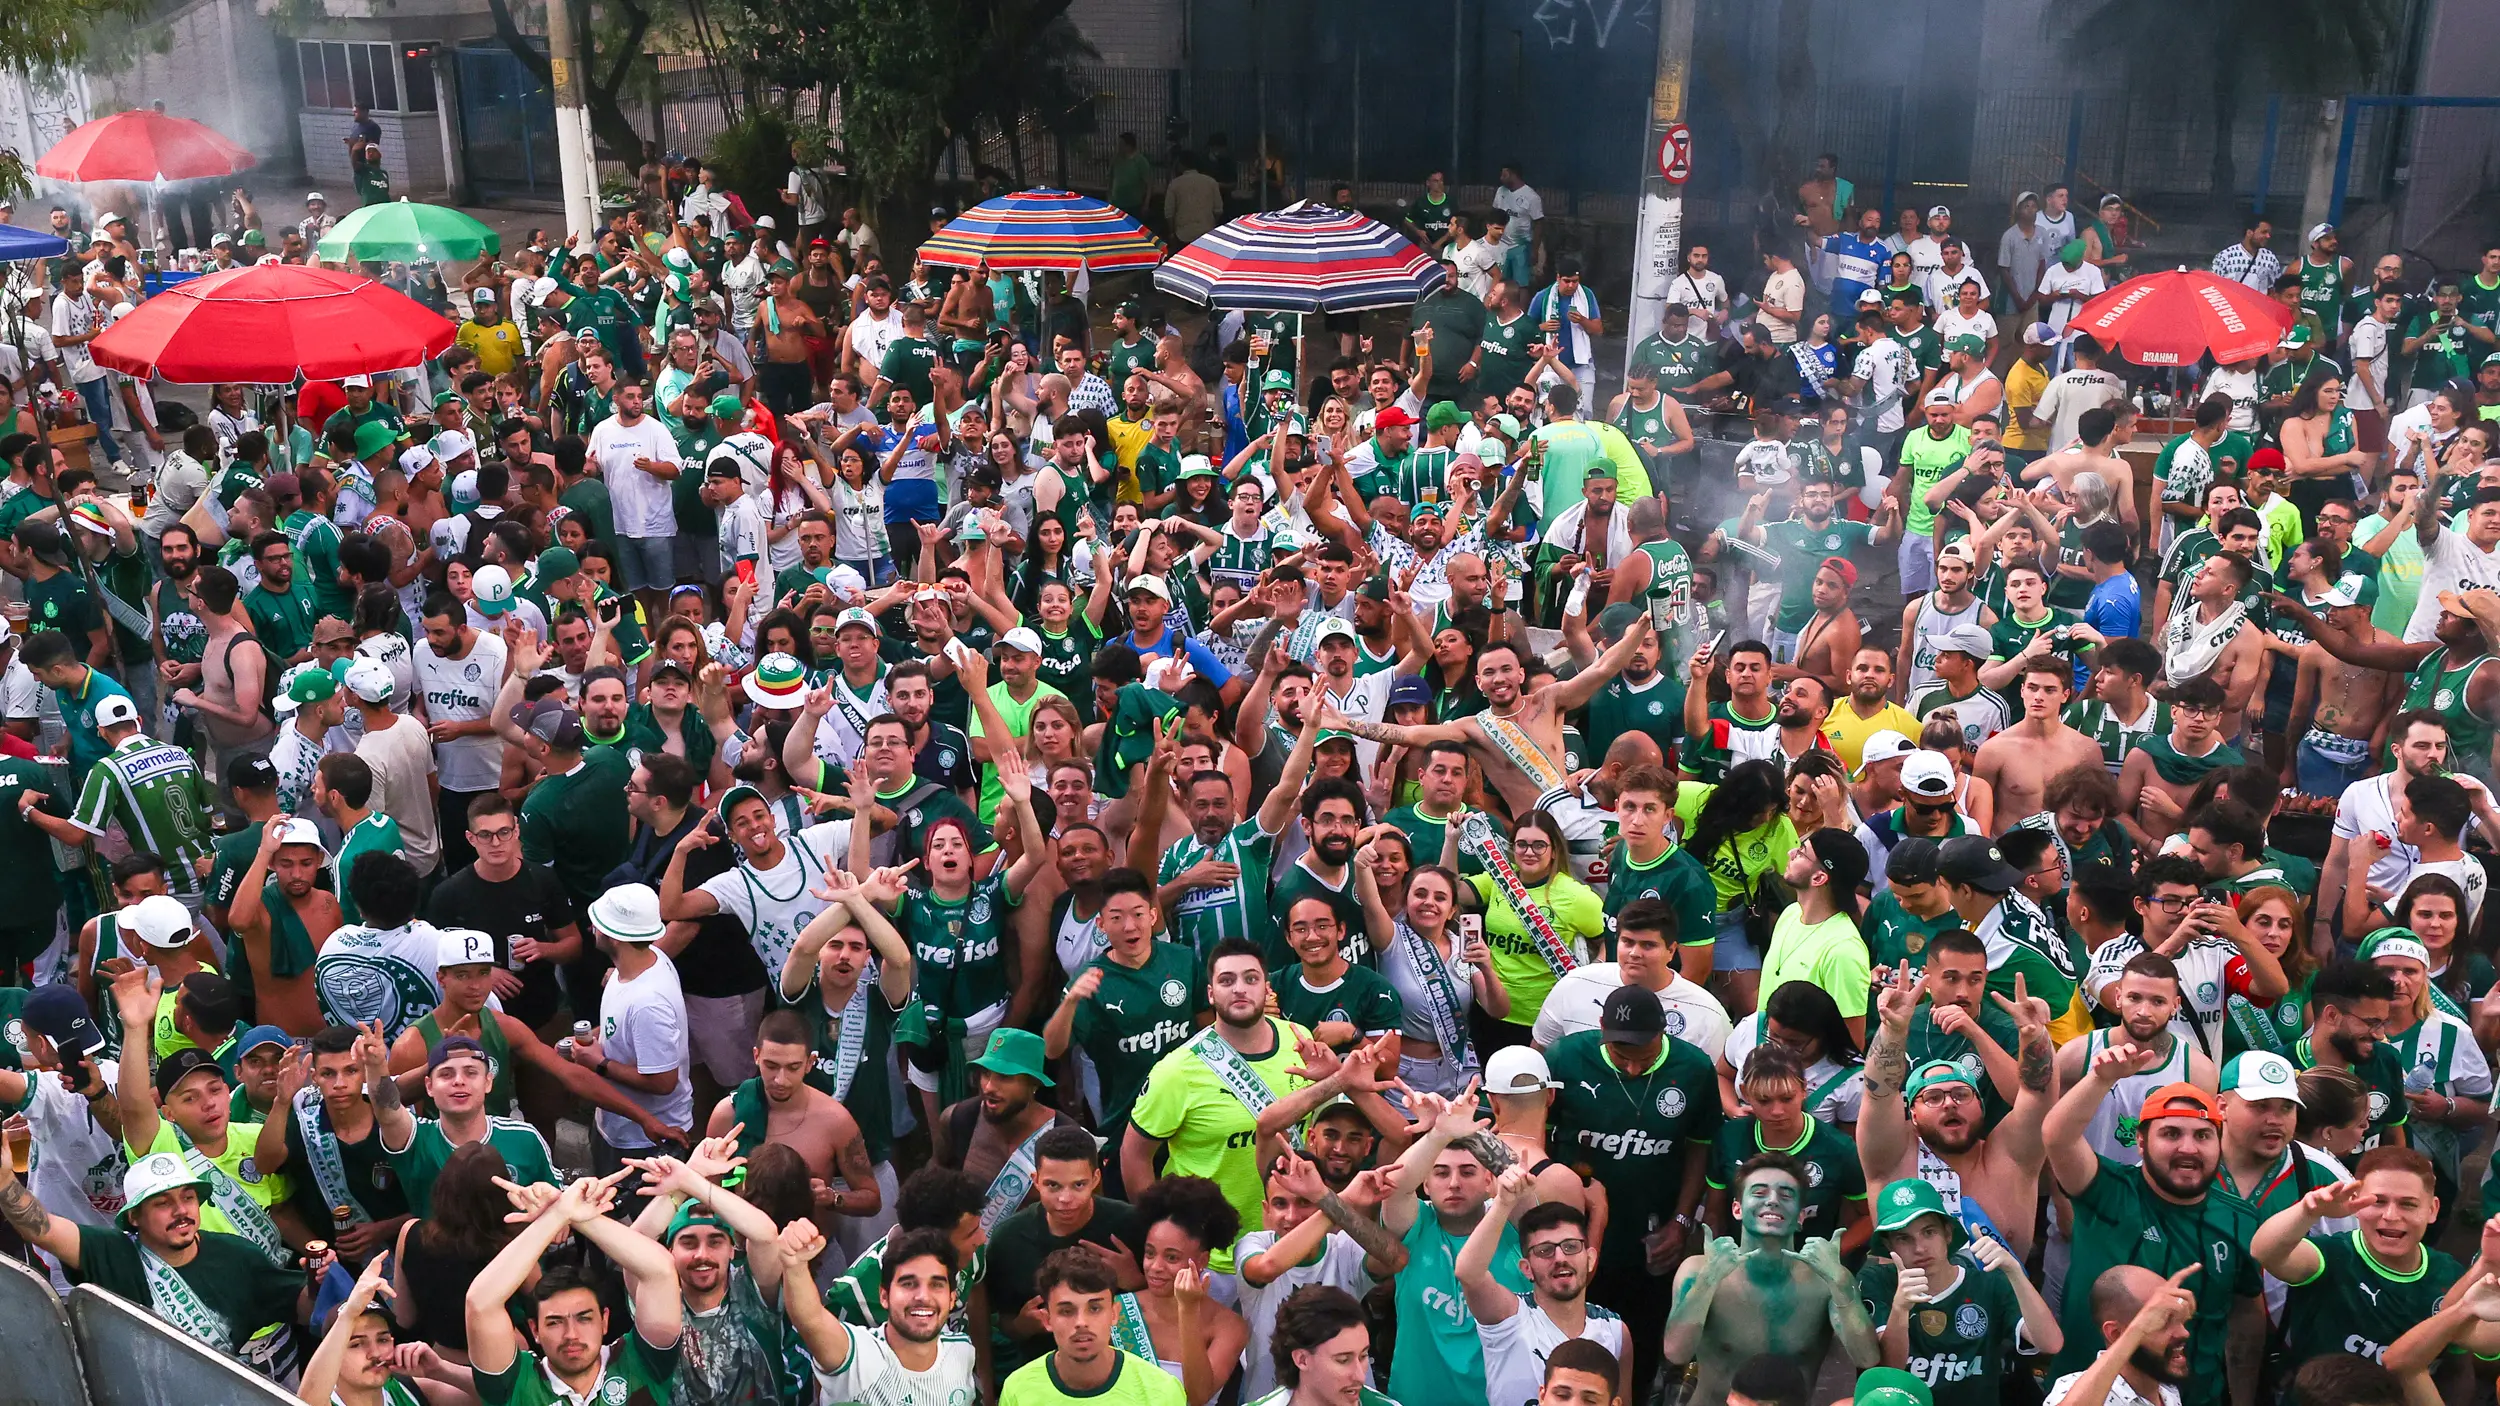 Festa na madrugada: jogadores do Palmeiras são recebidos por torcida no CT